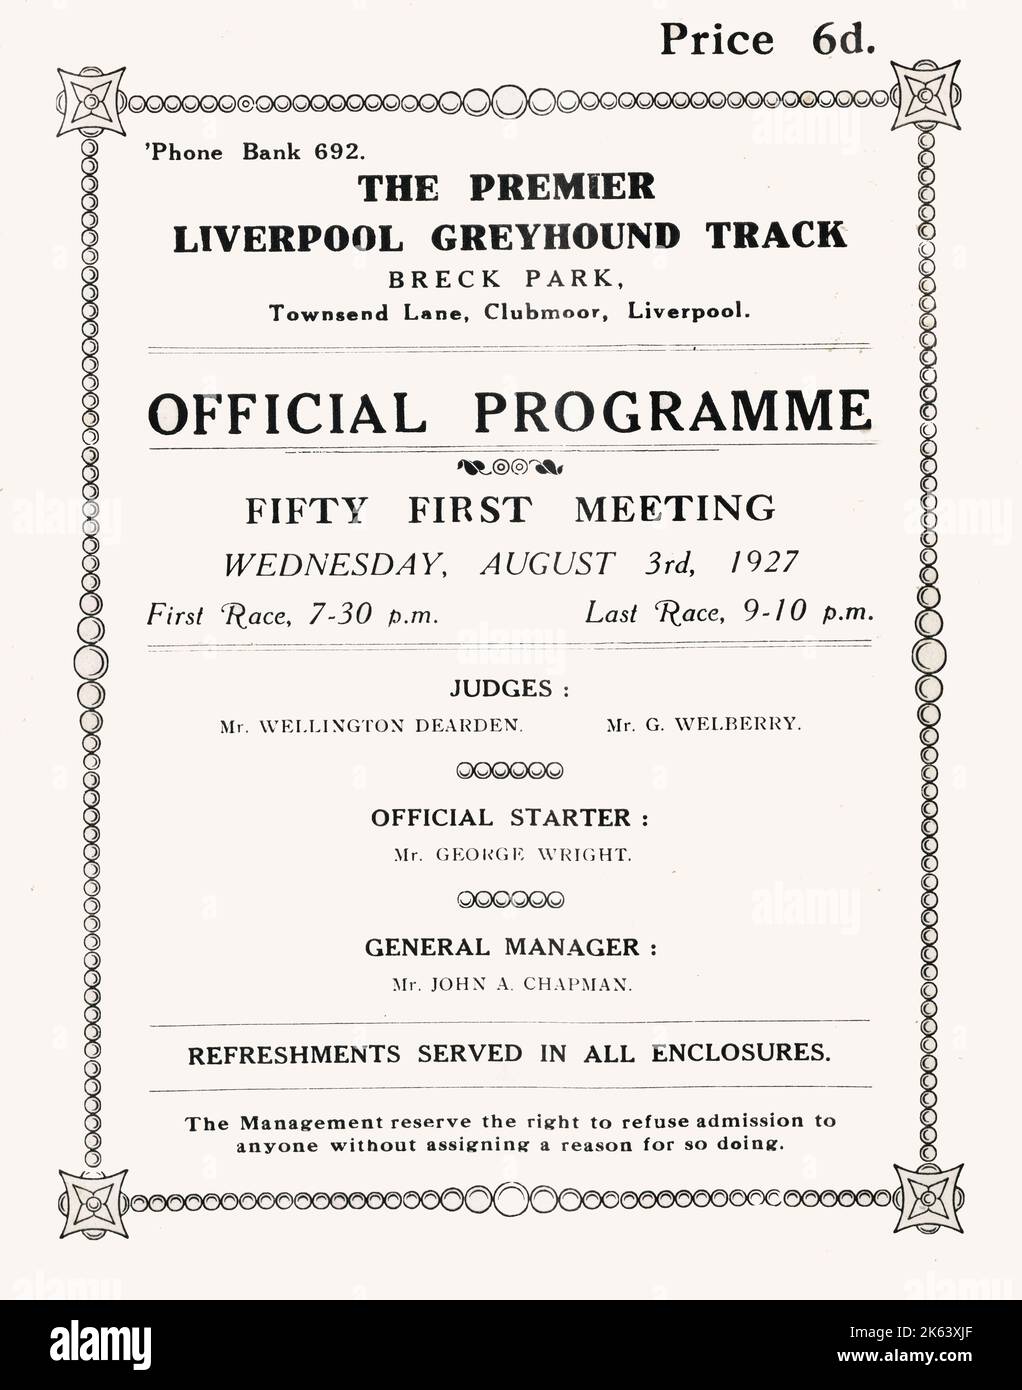 Der Premier Liverpool Greyhound Track - Breck Park, Townsend Lane, Clubmoor, Liverpool.. Das 50. Erste Treffen am Mittwoch, den 3.. August 1927. Datum: Ca. 1910s Stockfoto